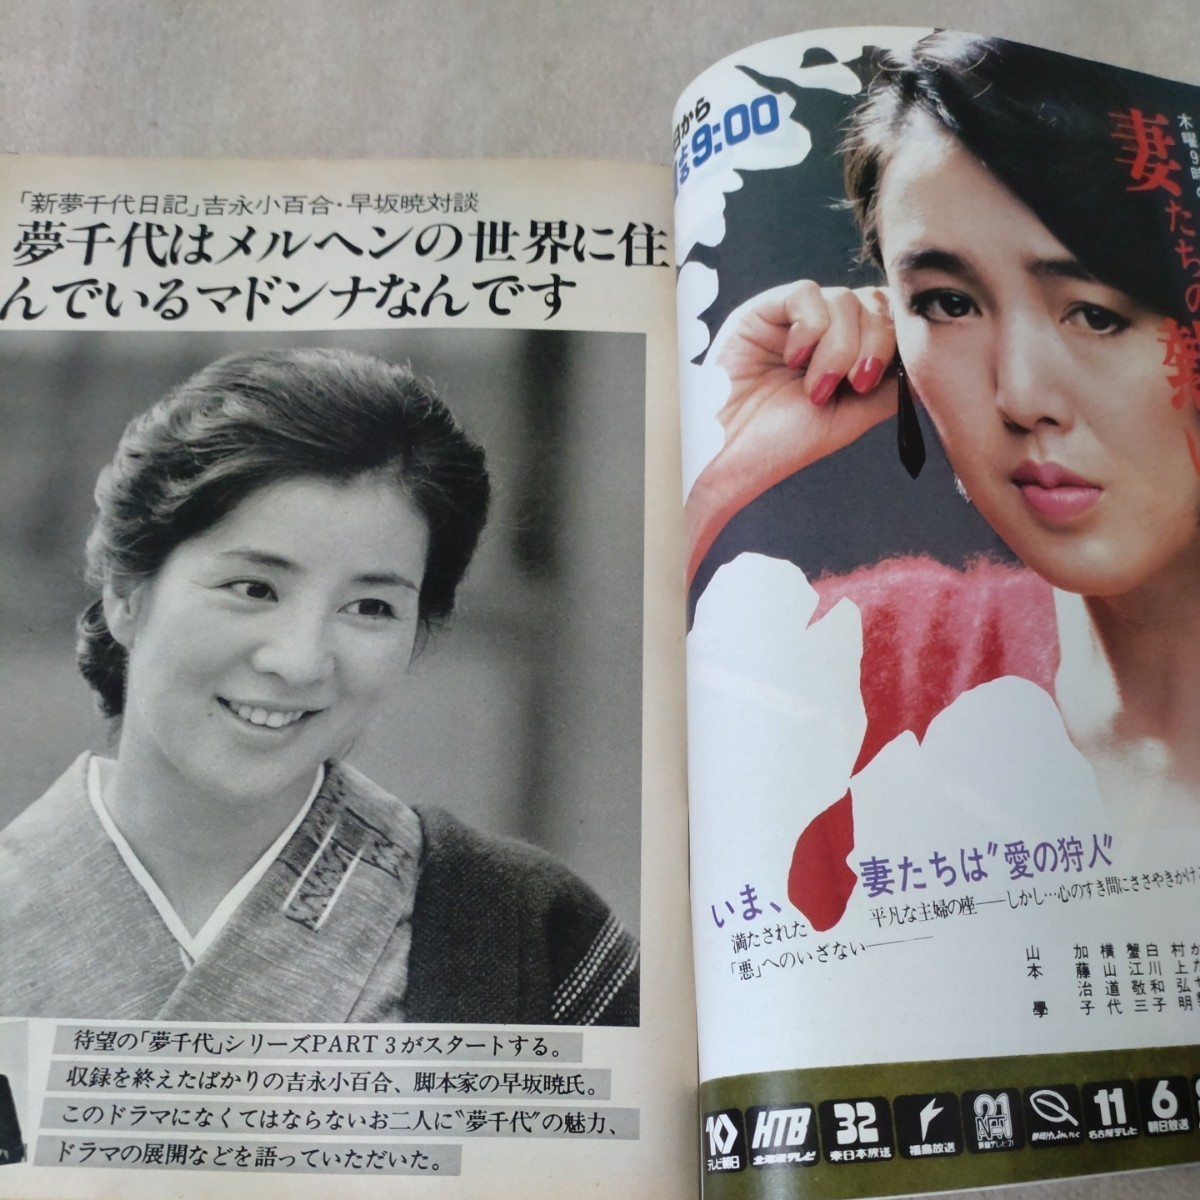  еженедельный TV гид China * Сикоку версия 1984 год 1/14~ [ обложка ] Yoshinaga Sayuri 